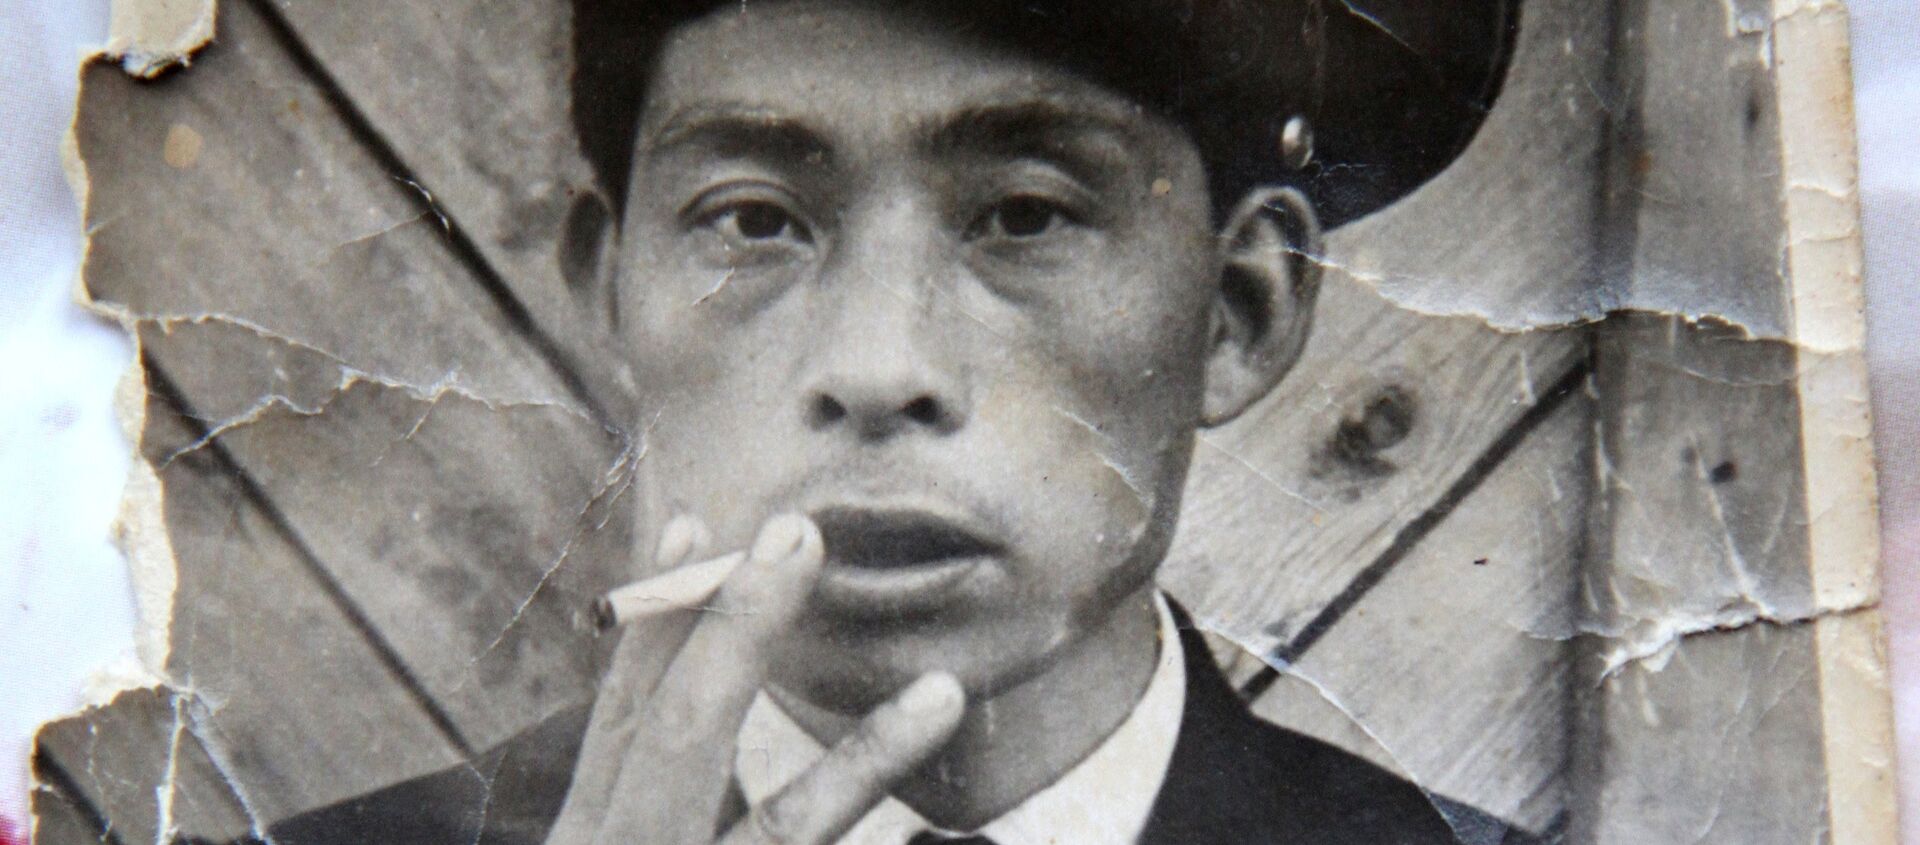 田中さん - Sputnik 日本, 1920, 22.04.2020